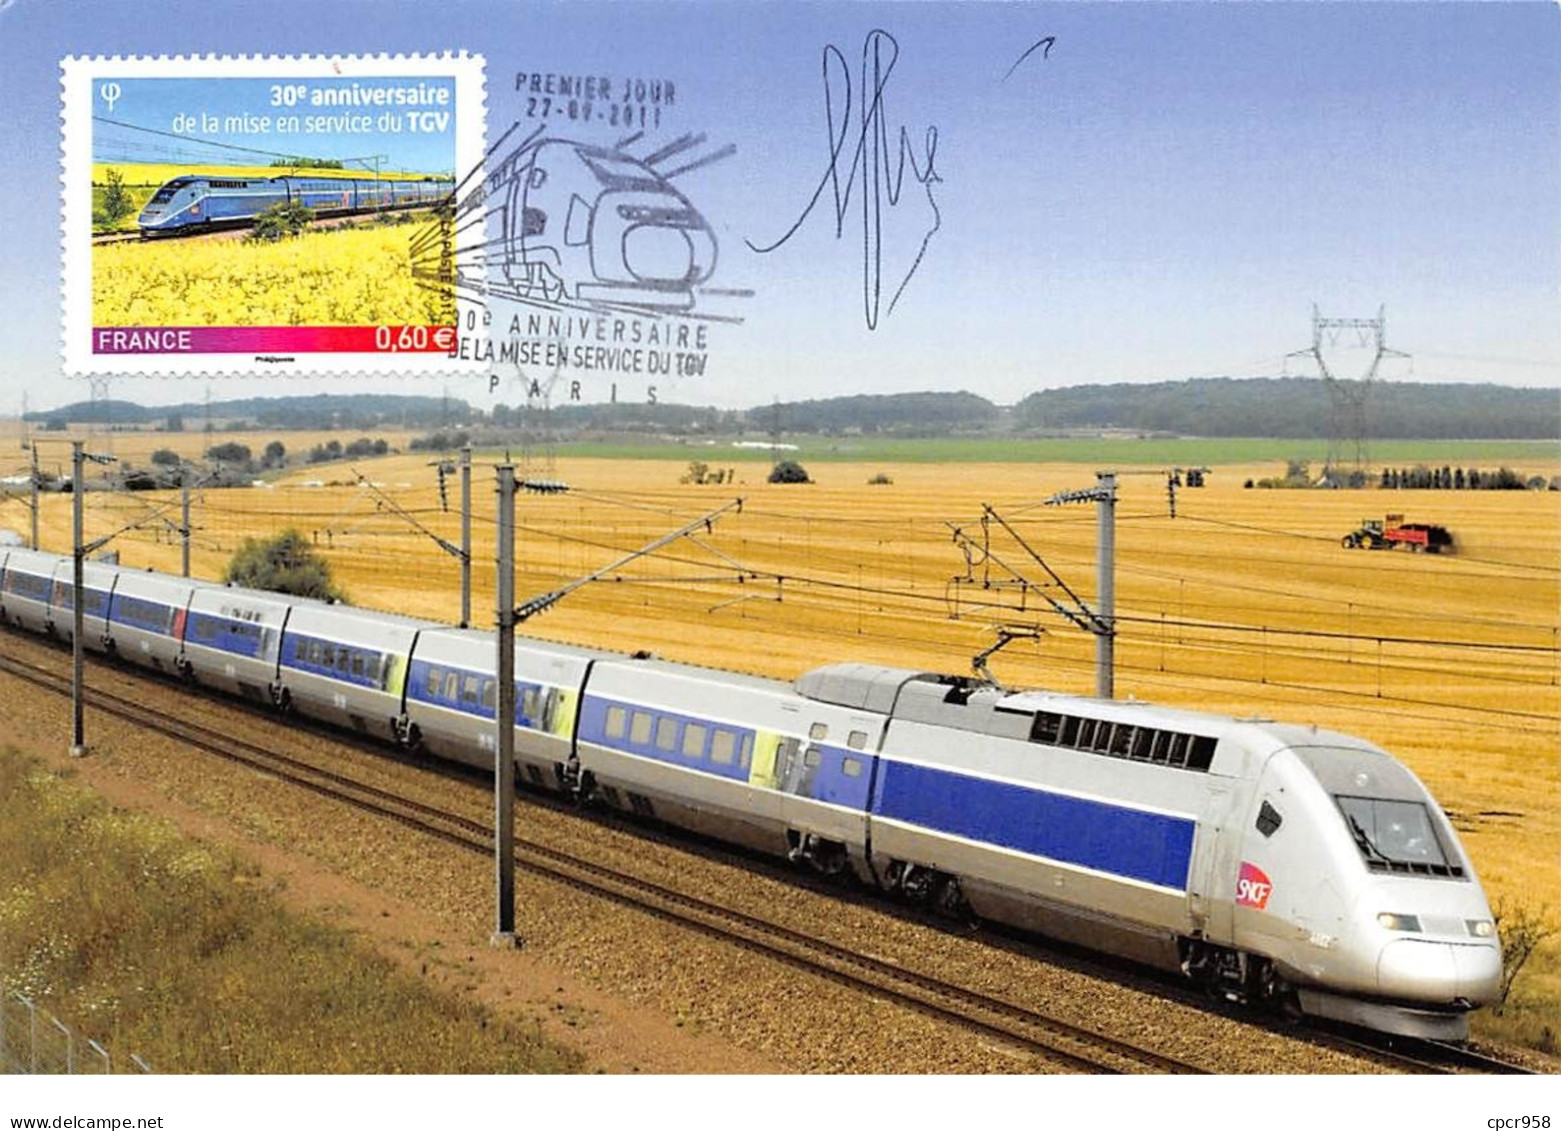 FRANCE.Carte Maximum.AM12007.27/09/2011.Cachet Paris.30e Anniversaire De La Mise En Service Du TGV.Signé - 2010-2019